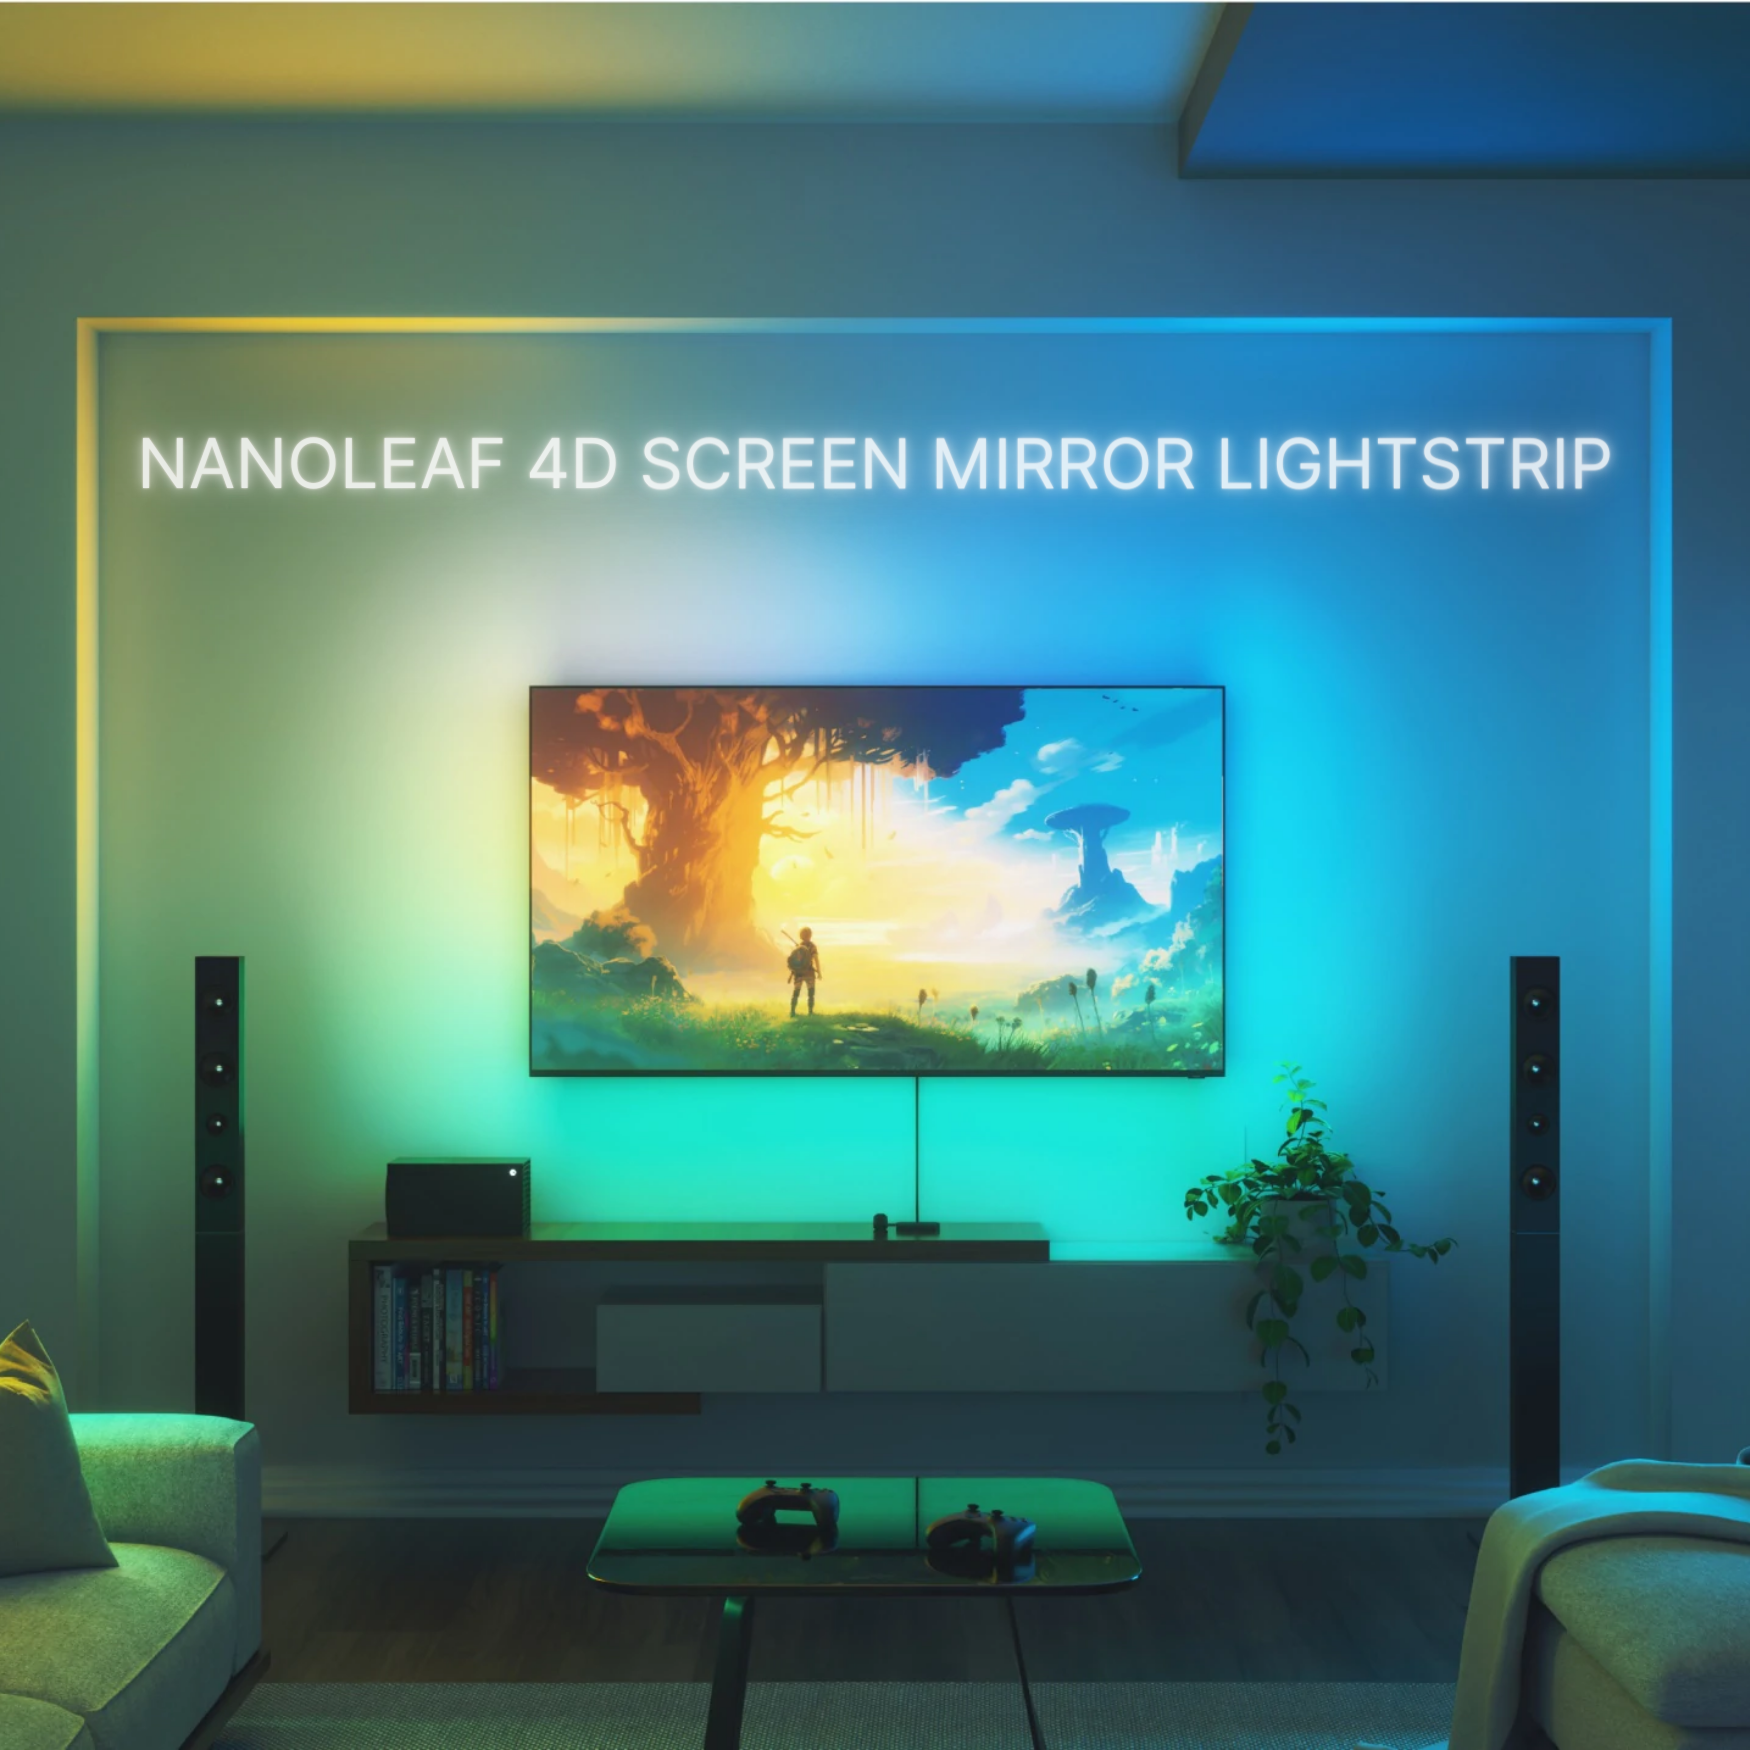 Nanoleaf 4D Screen Mirror Lightstrip